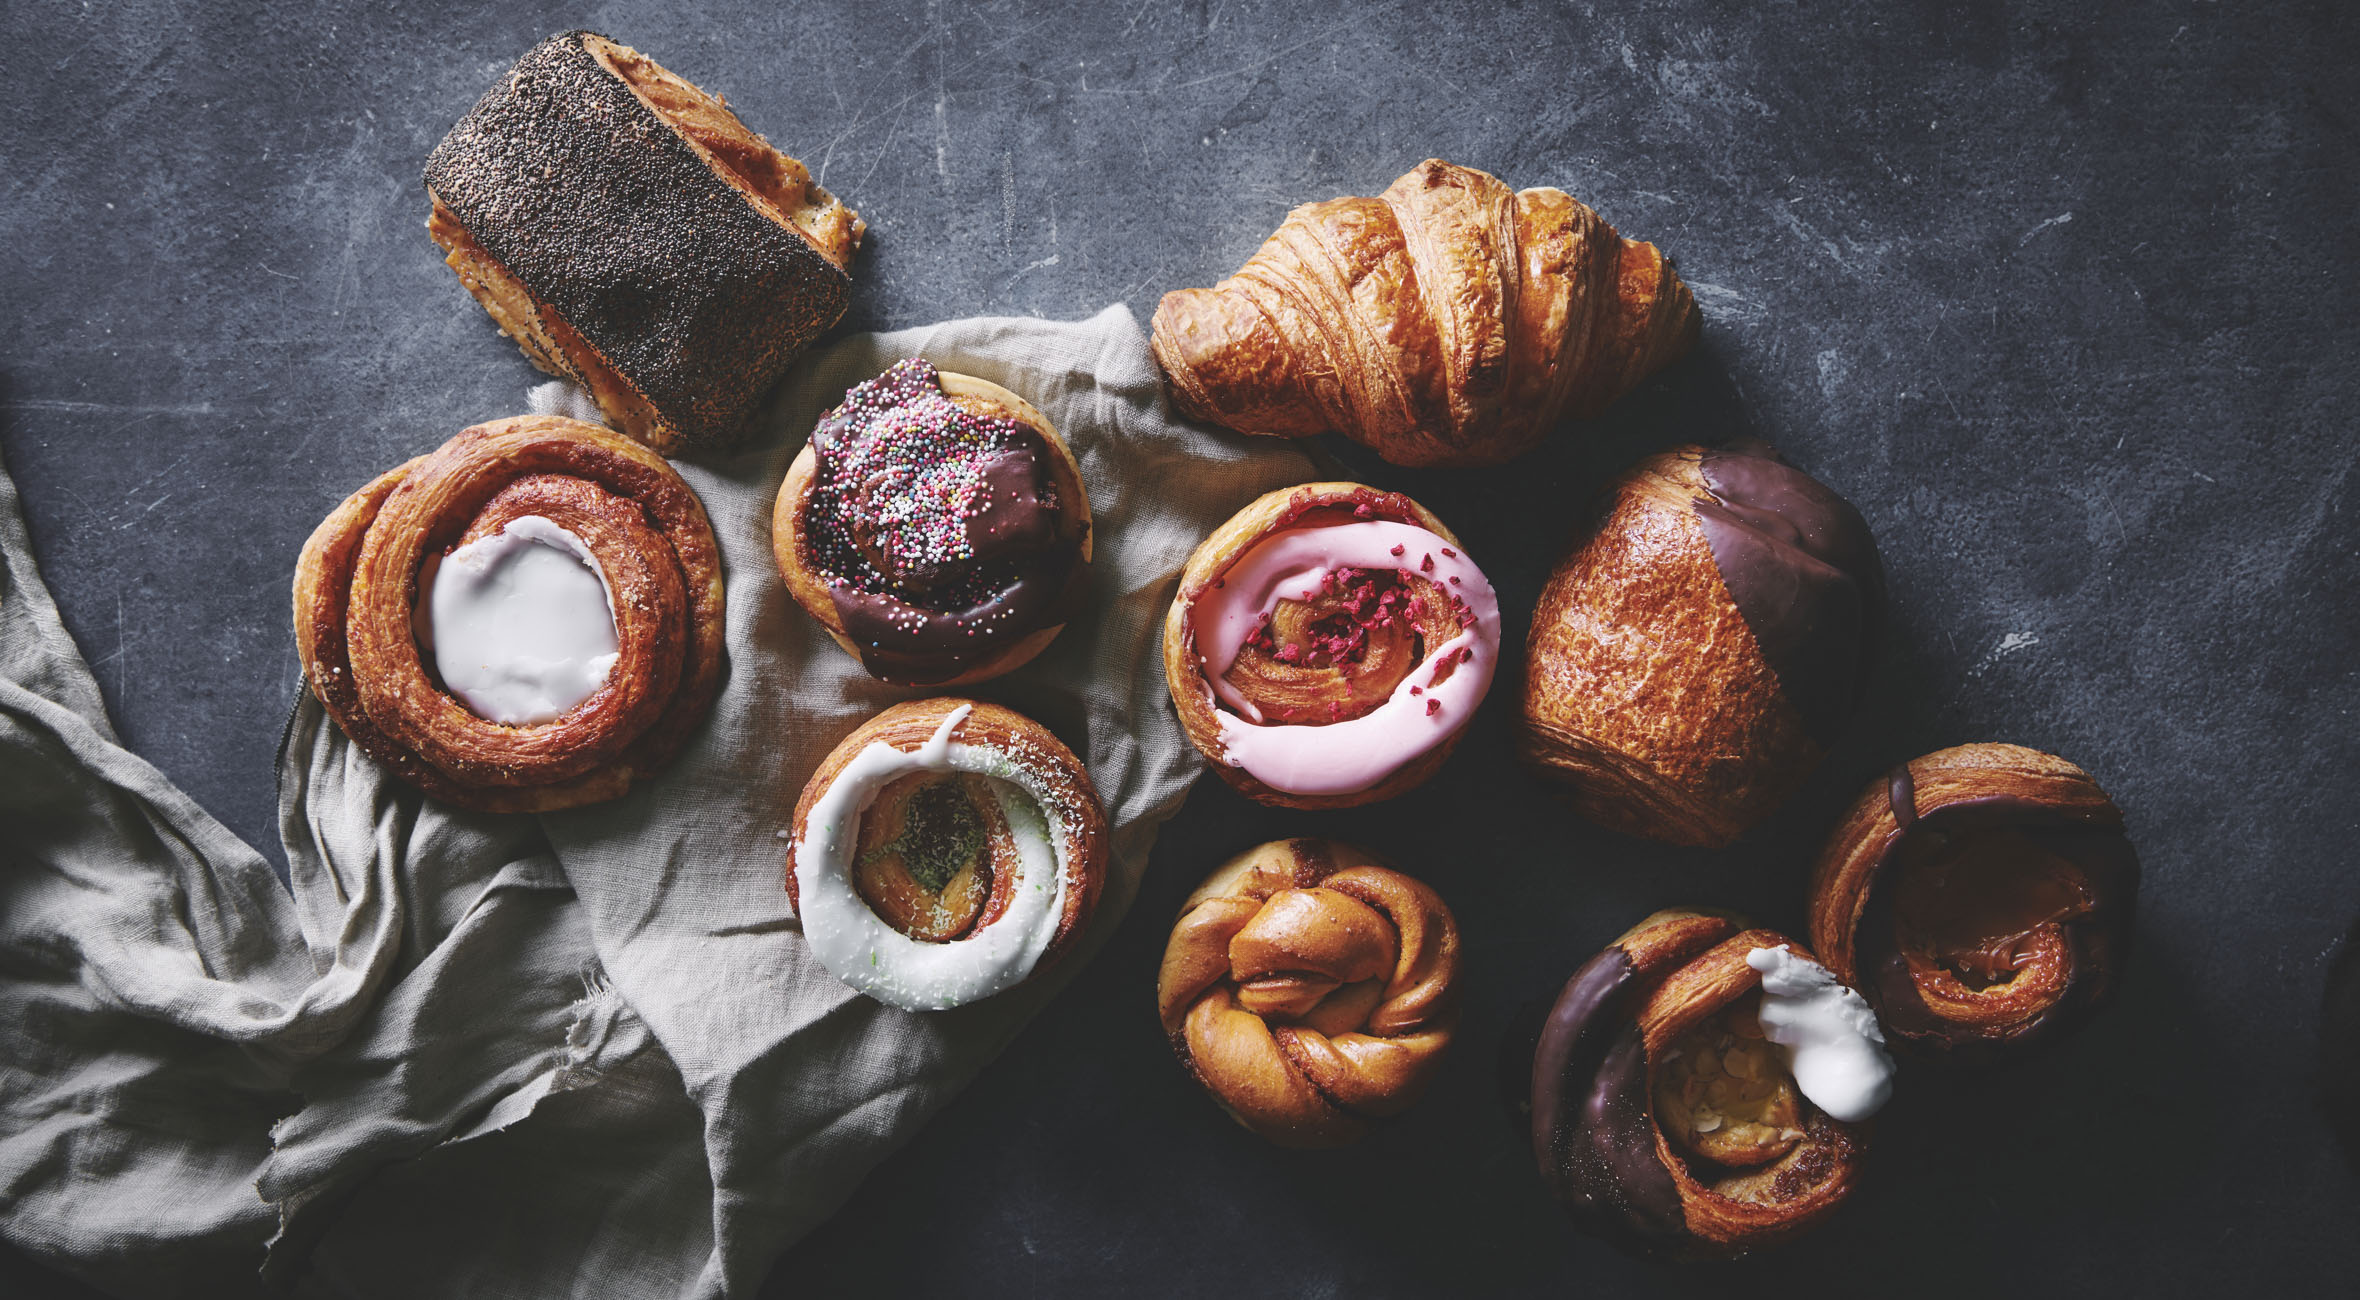 Frit valg til alt hos Lauras Bakery i Torvehallerne – Hipt bageri byder på alt fra surdejsbrød til træstammer, tebirkes, jordbærtærter, sandwich, snegle og croissanter